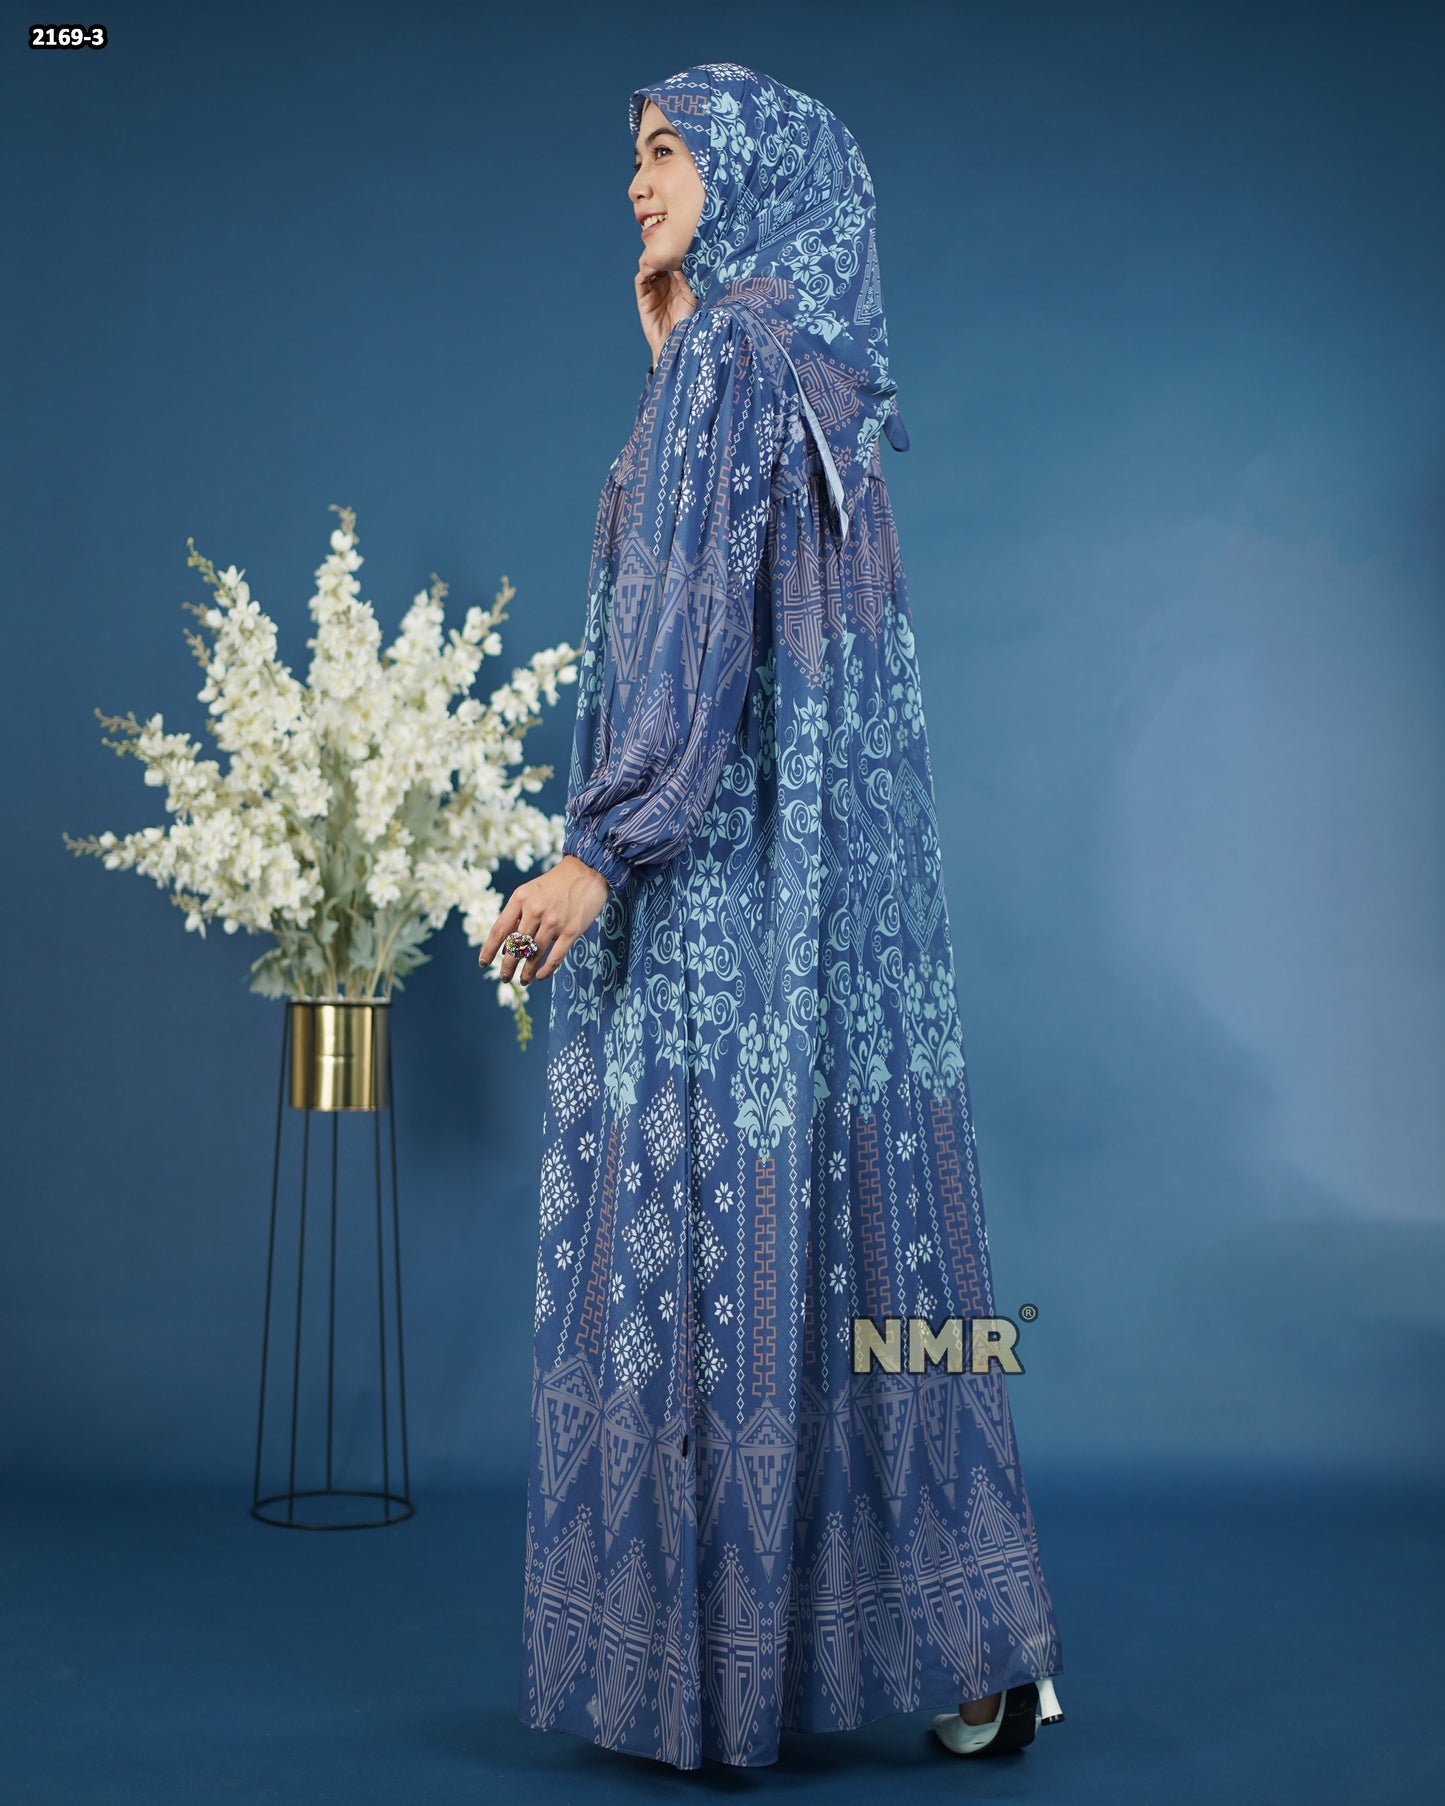 NMR Gamis Cerutty BabyDoll Premium Vol 2169-3 ( INC Hijab )